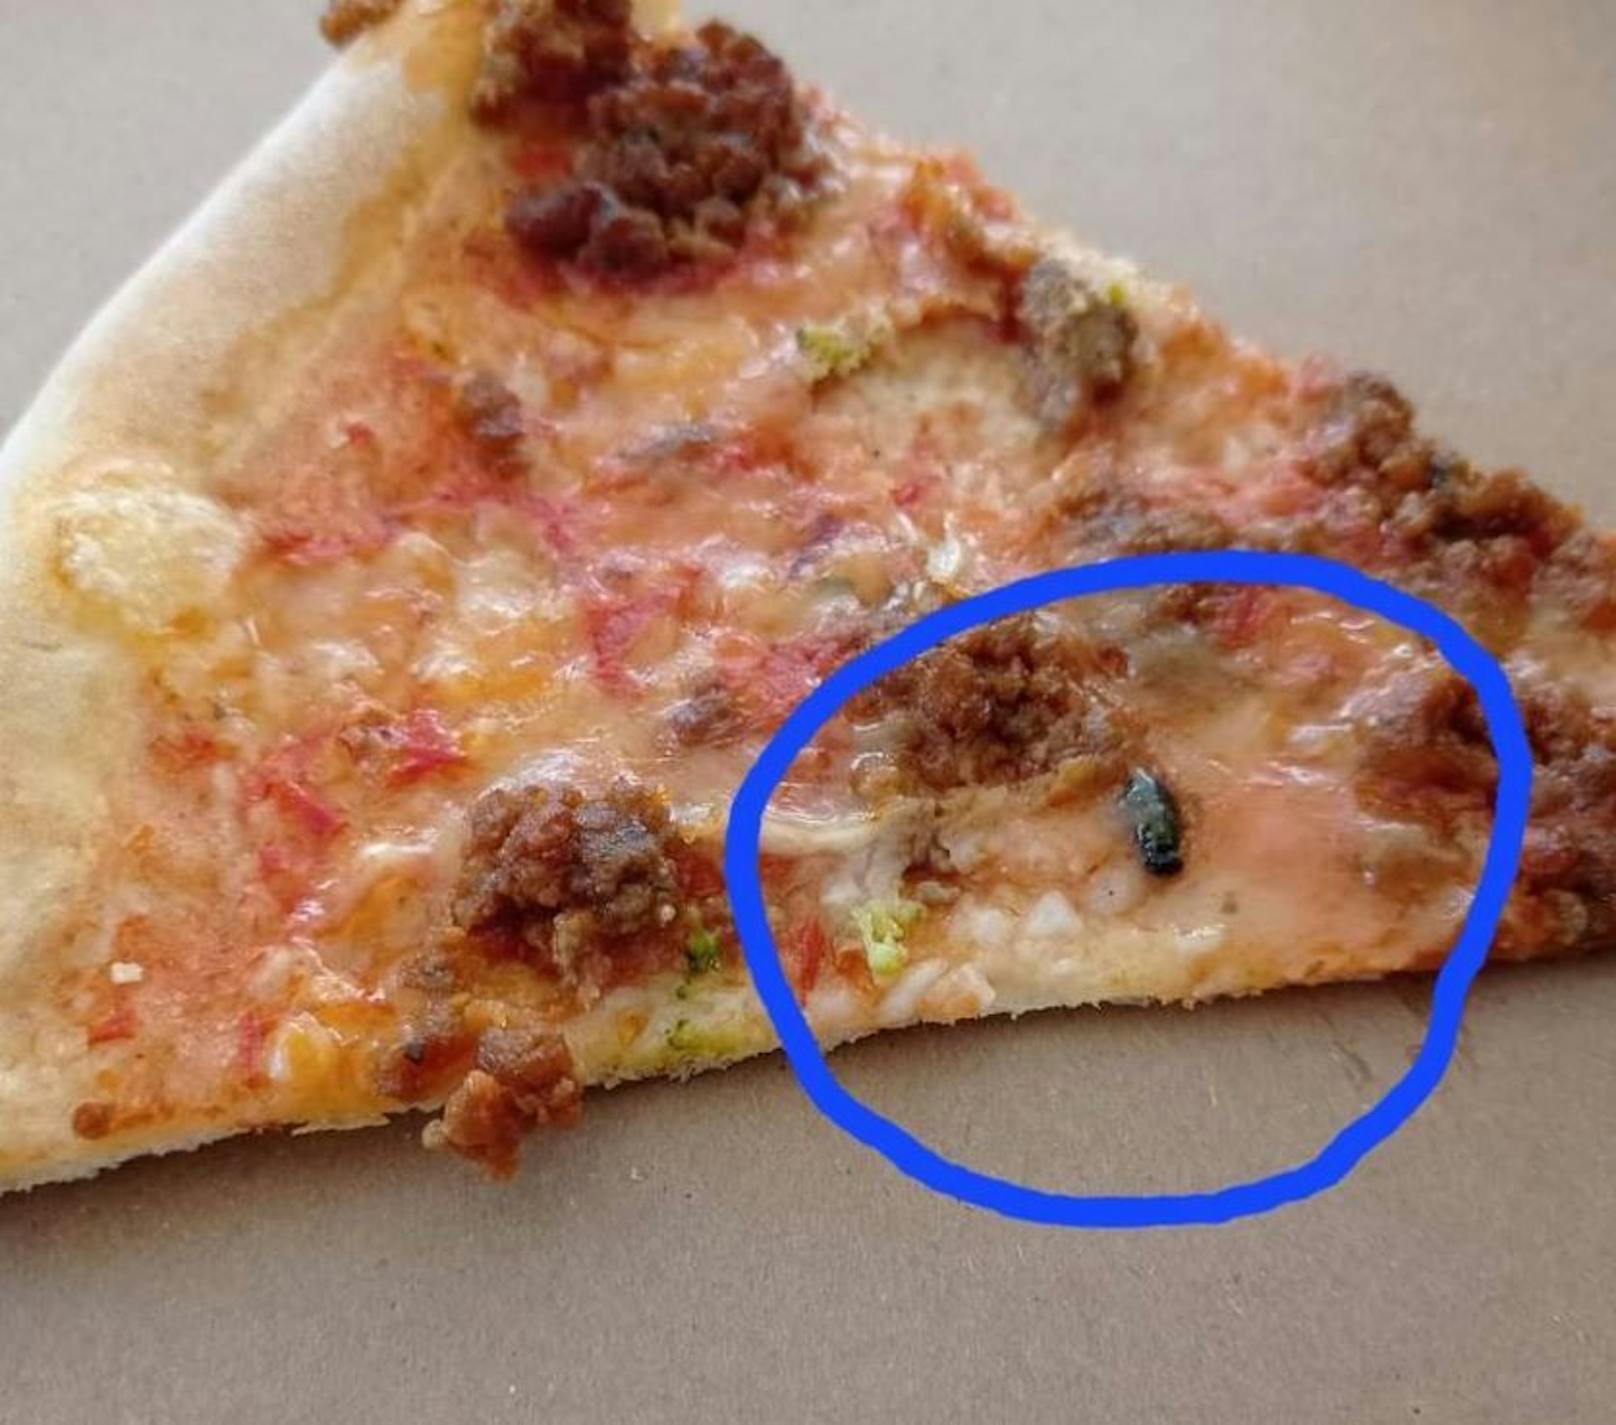 Unerwünschte Ekel-Beilage: Frau bekam Pizza mit Fliege